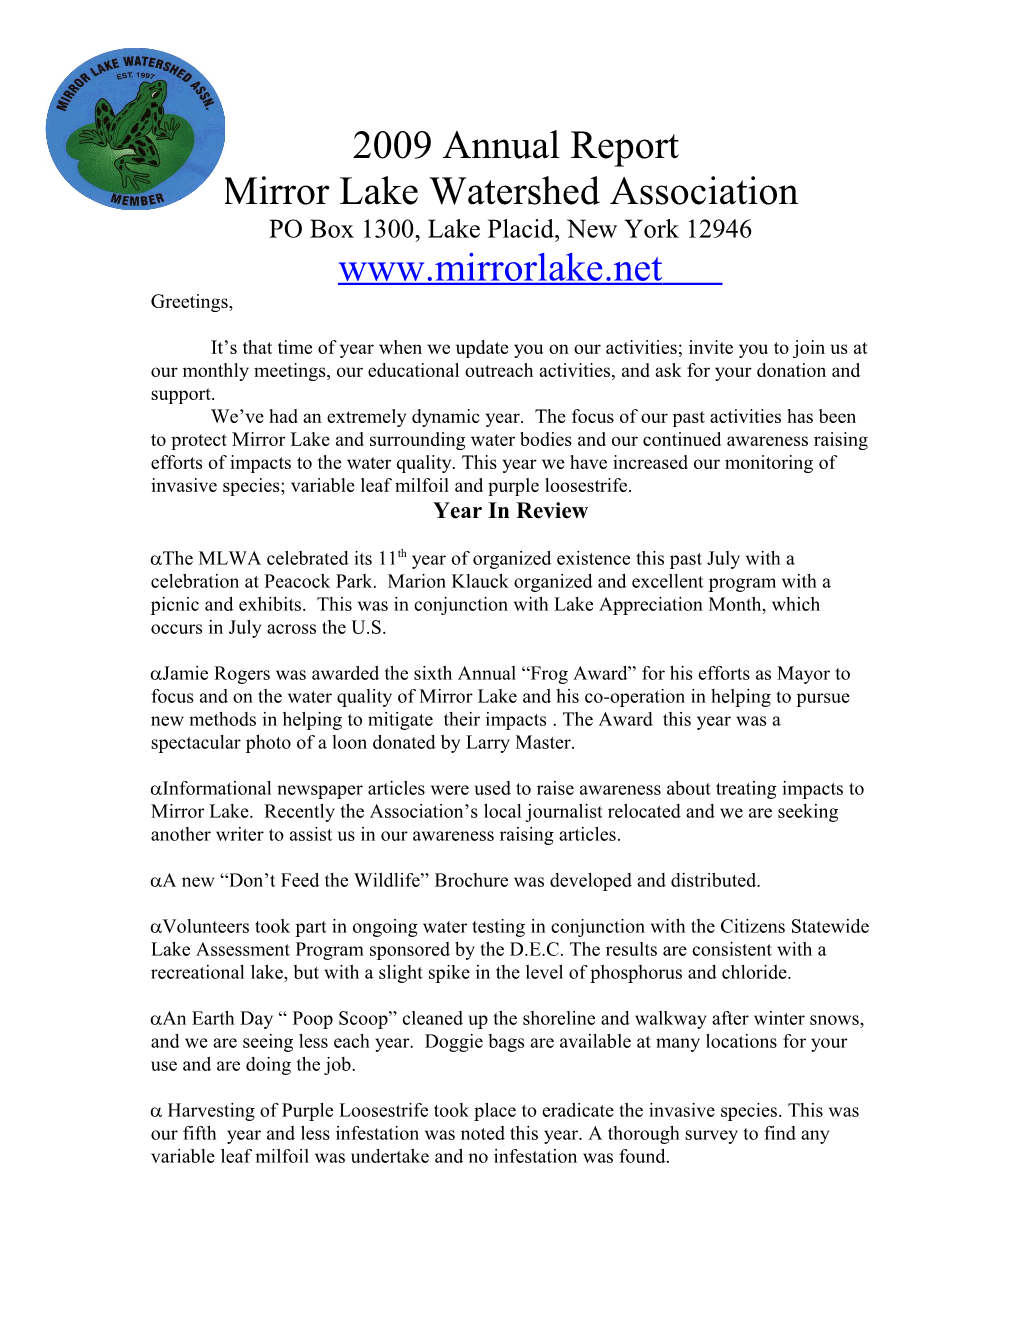 Mirror Lake Watershed Association